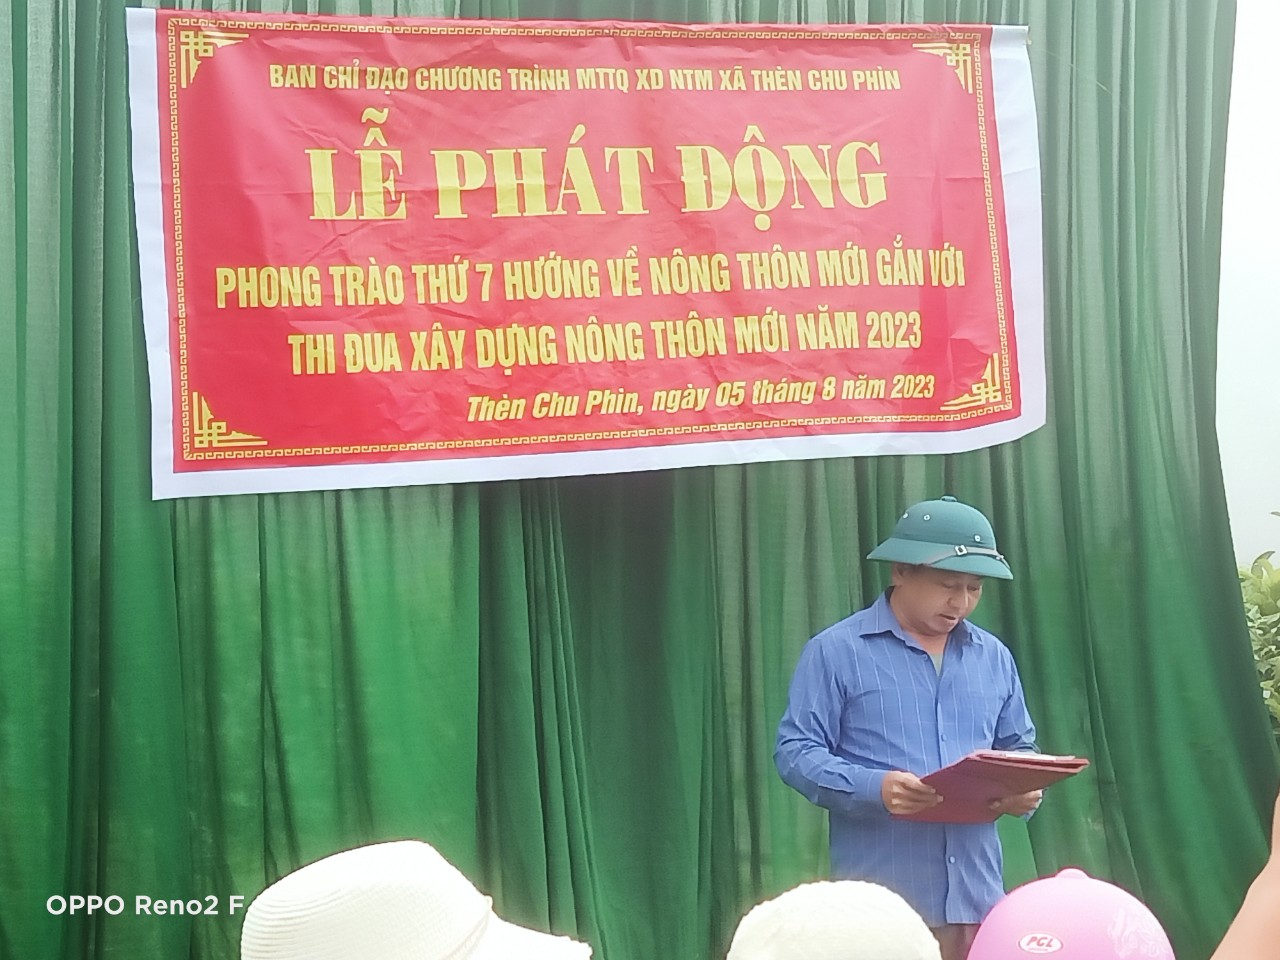 Xã Thèn Chu Phìn tiếp tục phát động “Phong trào thứ 7 hướng về nông thôn mới gắn với thi đua xây dựng nông thôn mới” quý III năm 2023